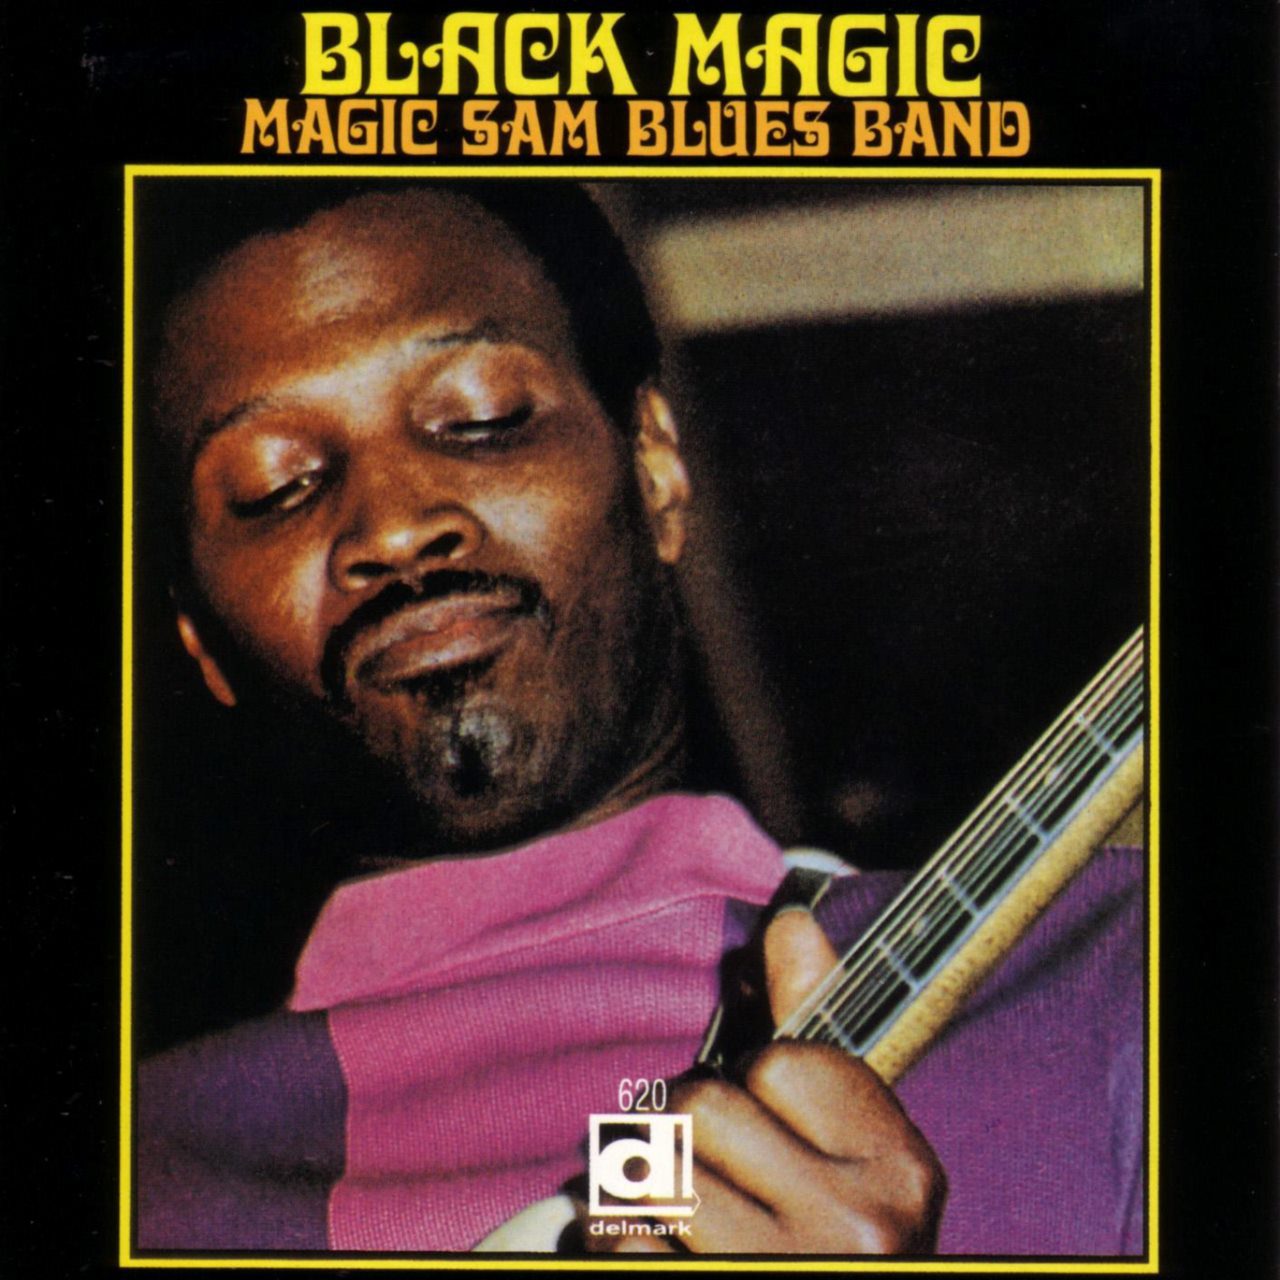 Magic Sam – Black Magic cover album